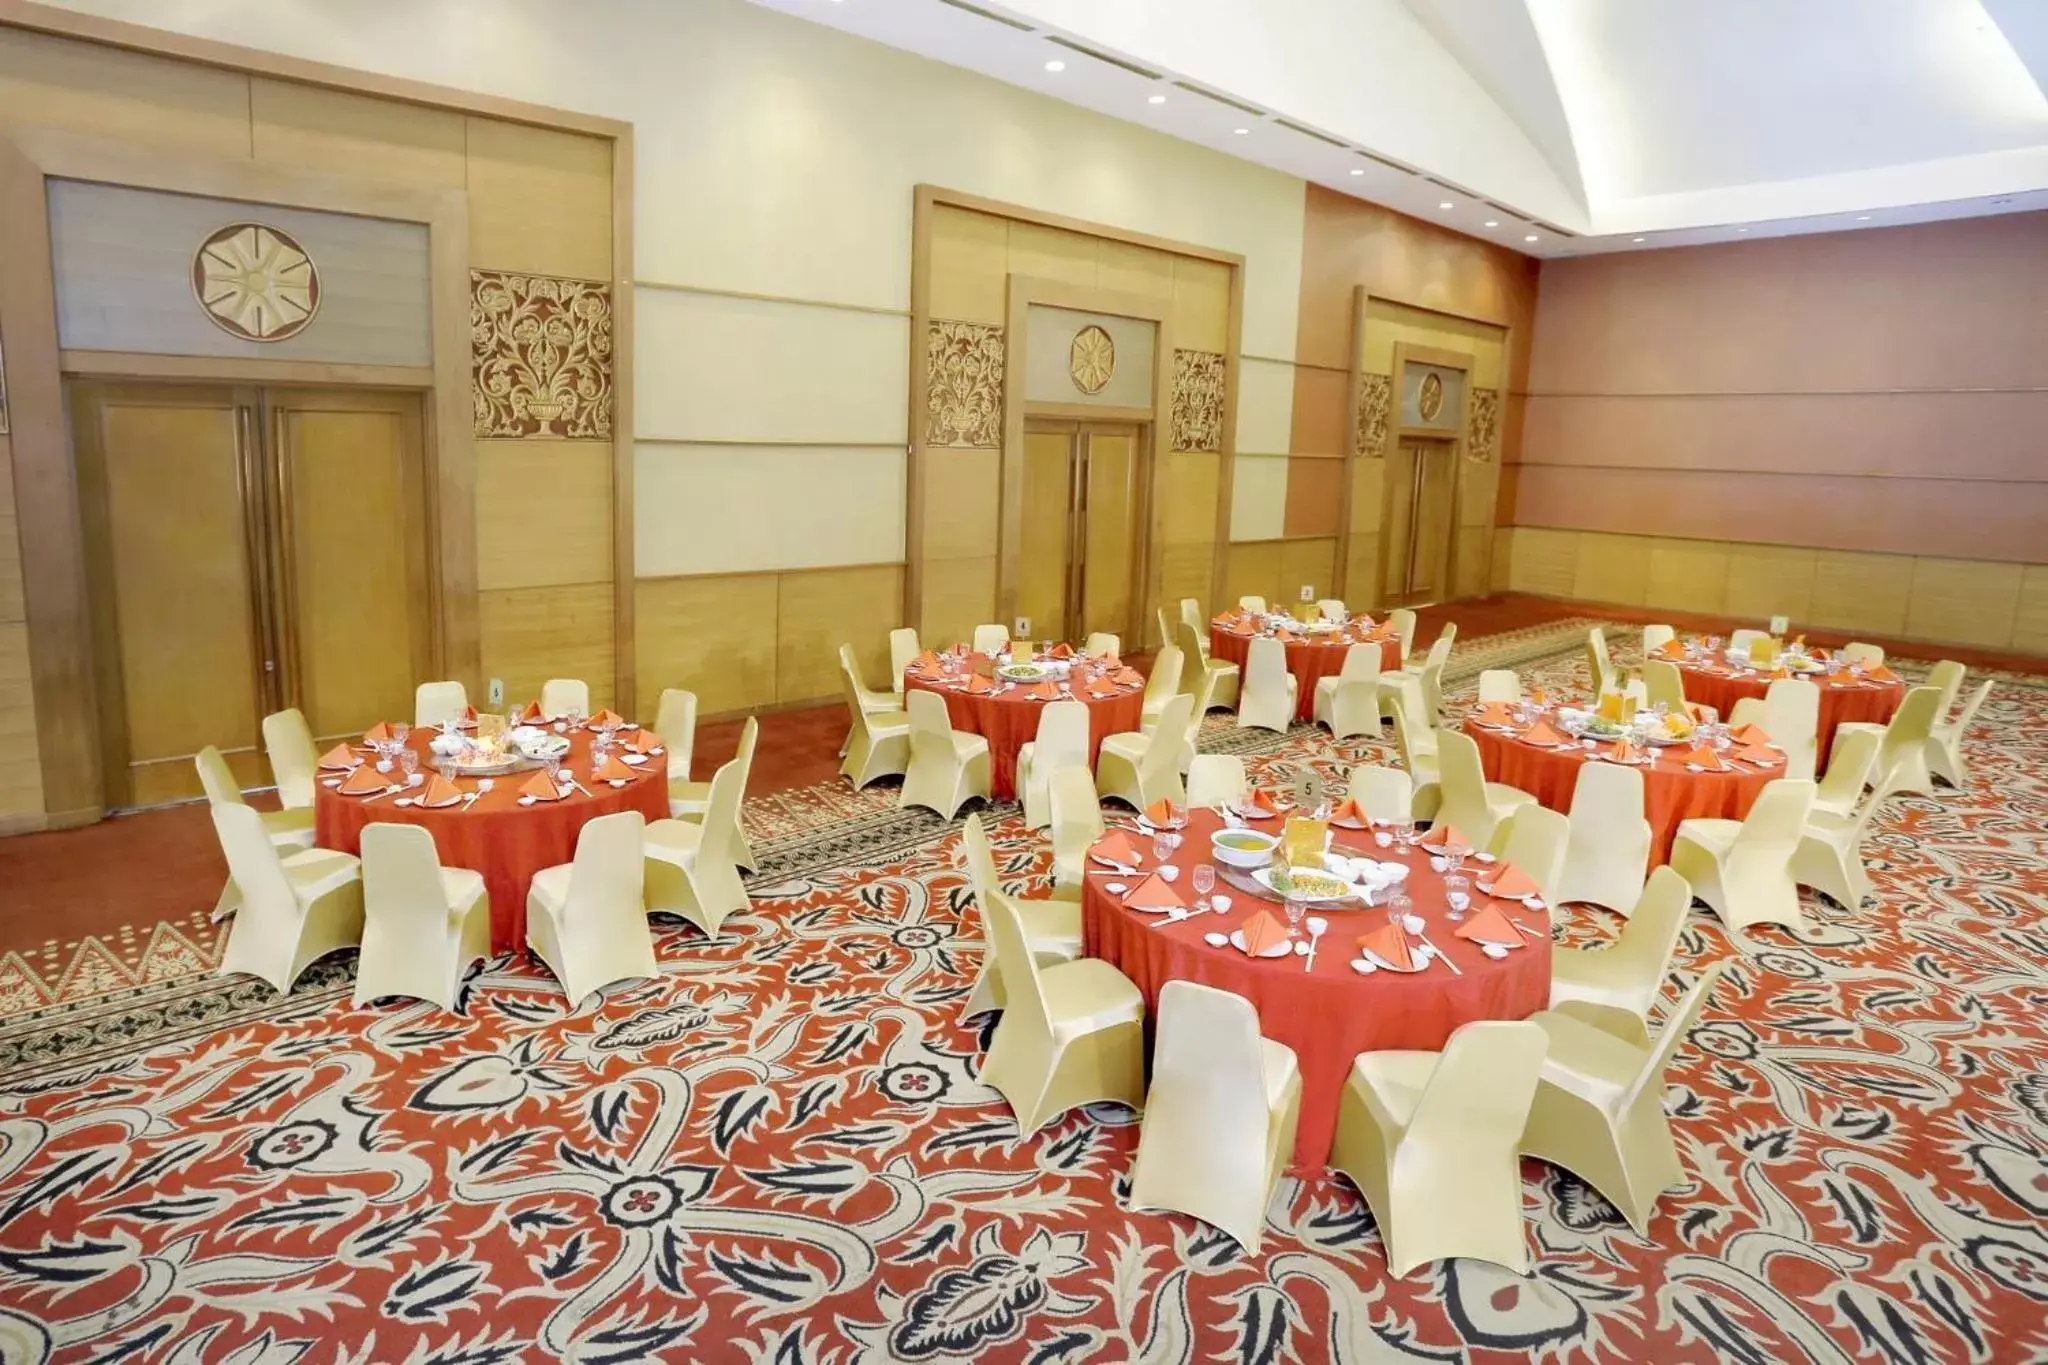 Banquet/Function facilities, Banquet Facilities in Aryaduta Palembang